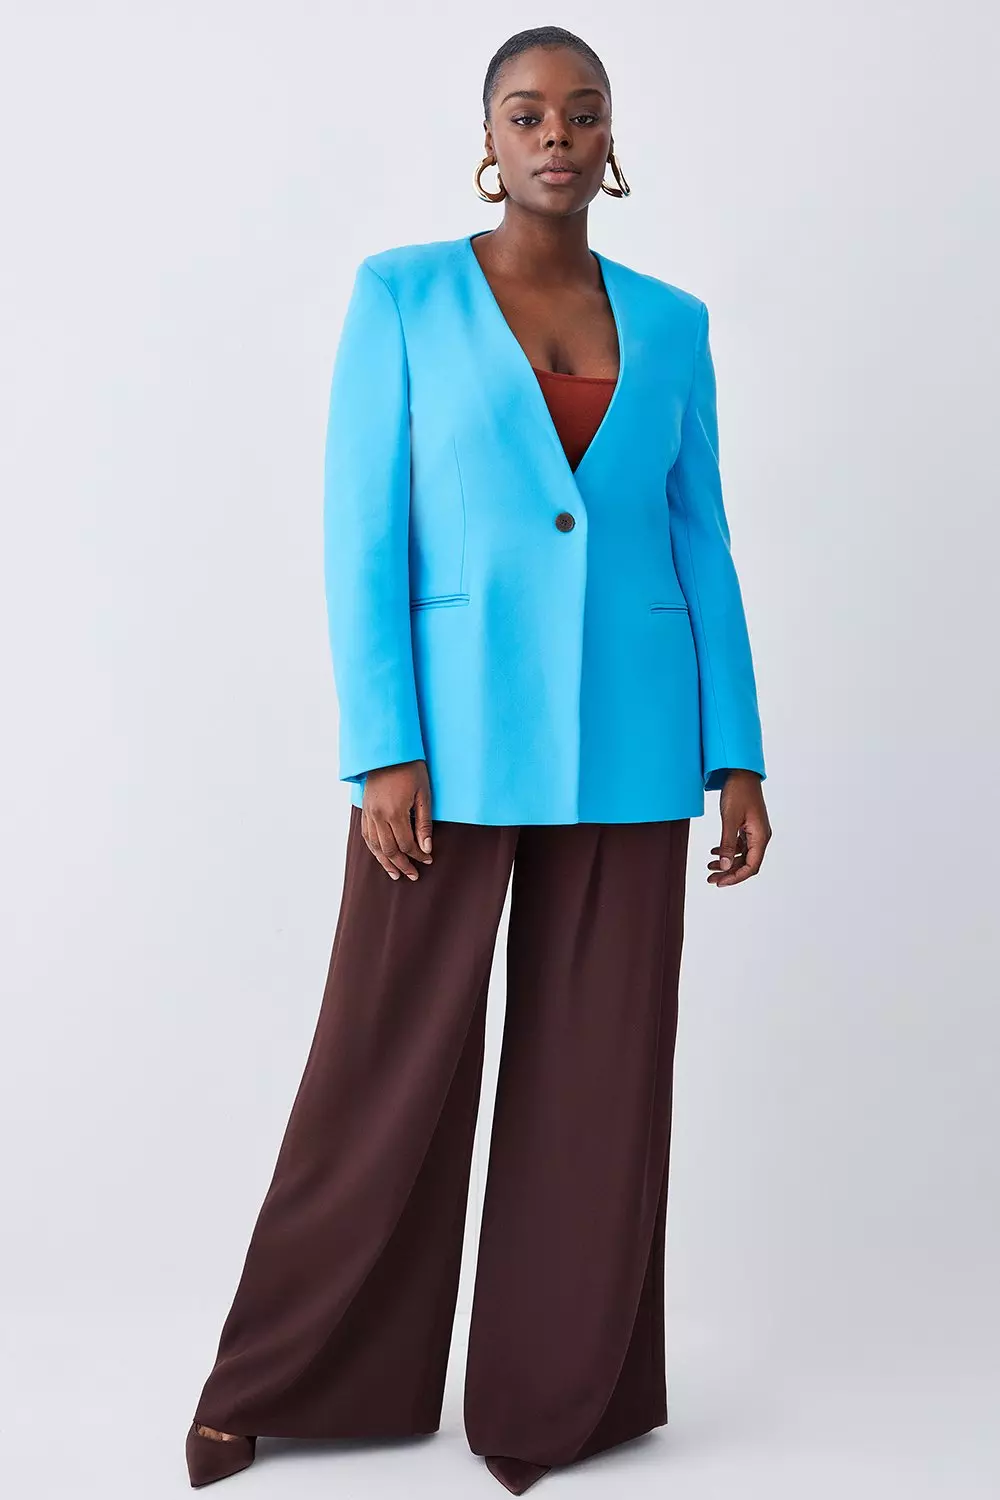 Women's Suits & Trouser Suits - Plus Size Tailoring